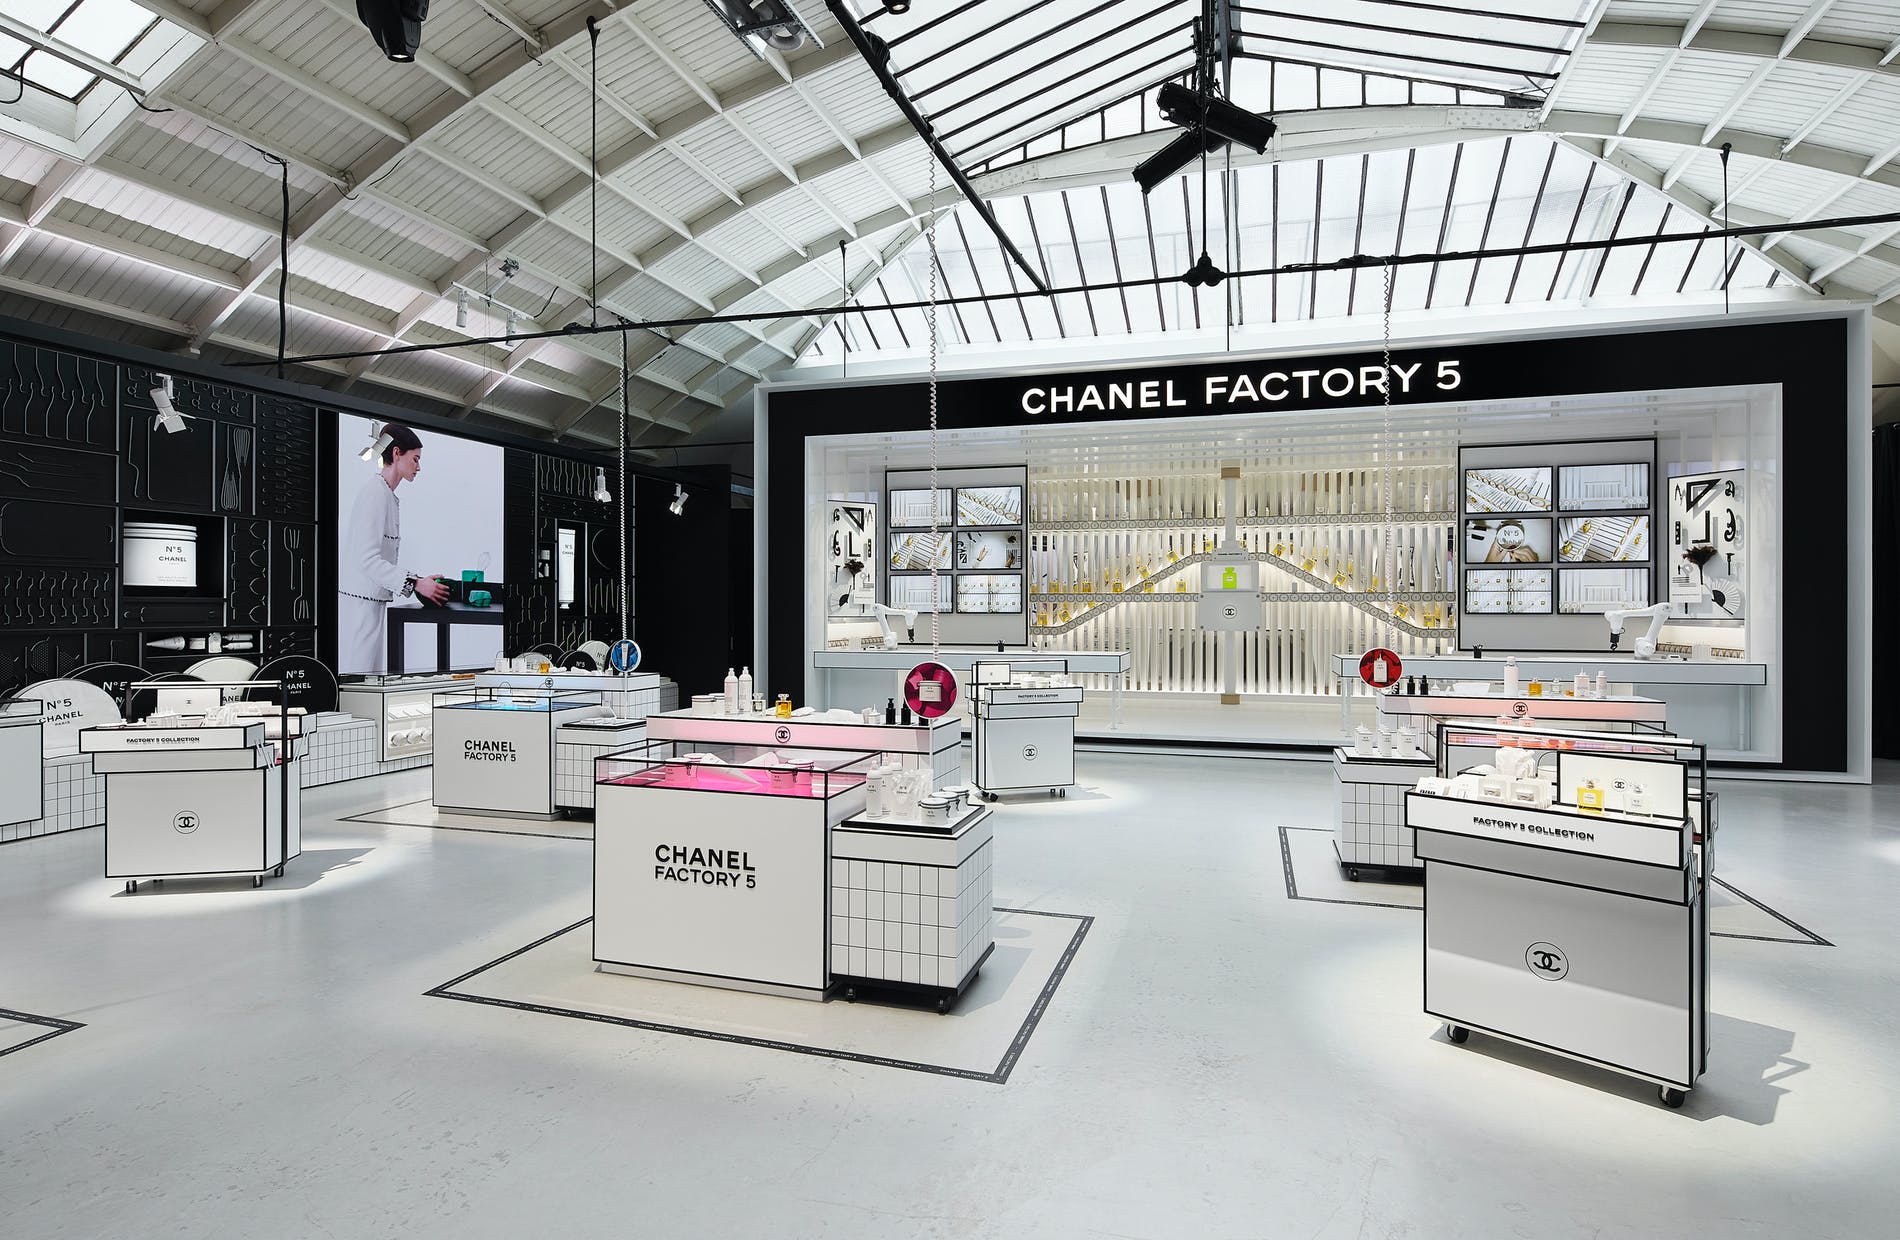 CHANEL FACTORY 5: La Pop-Up Store de la Maison donde podrás vivir una experiencia de lujo dentro de una fábrica ultramoderna